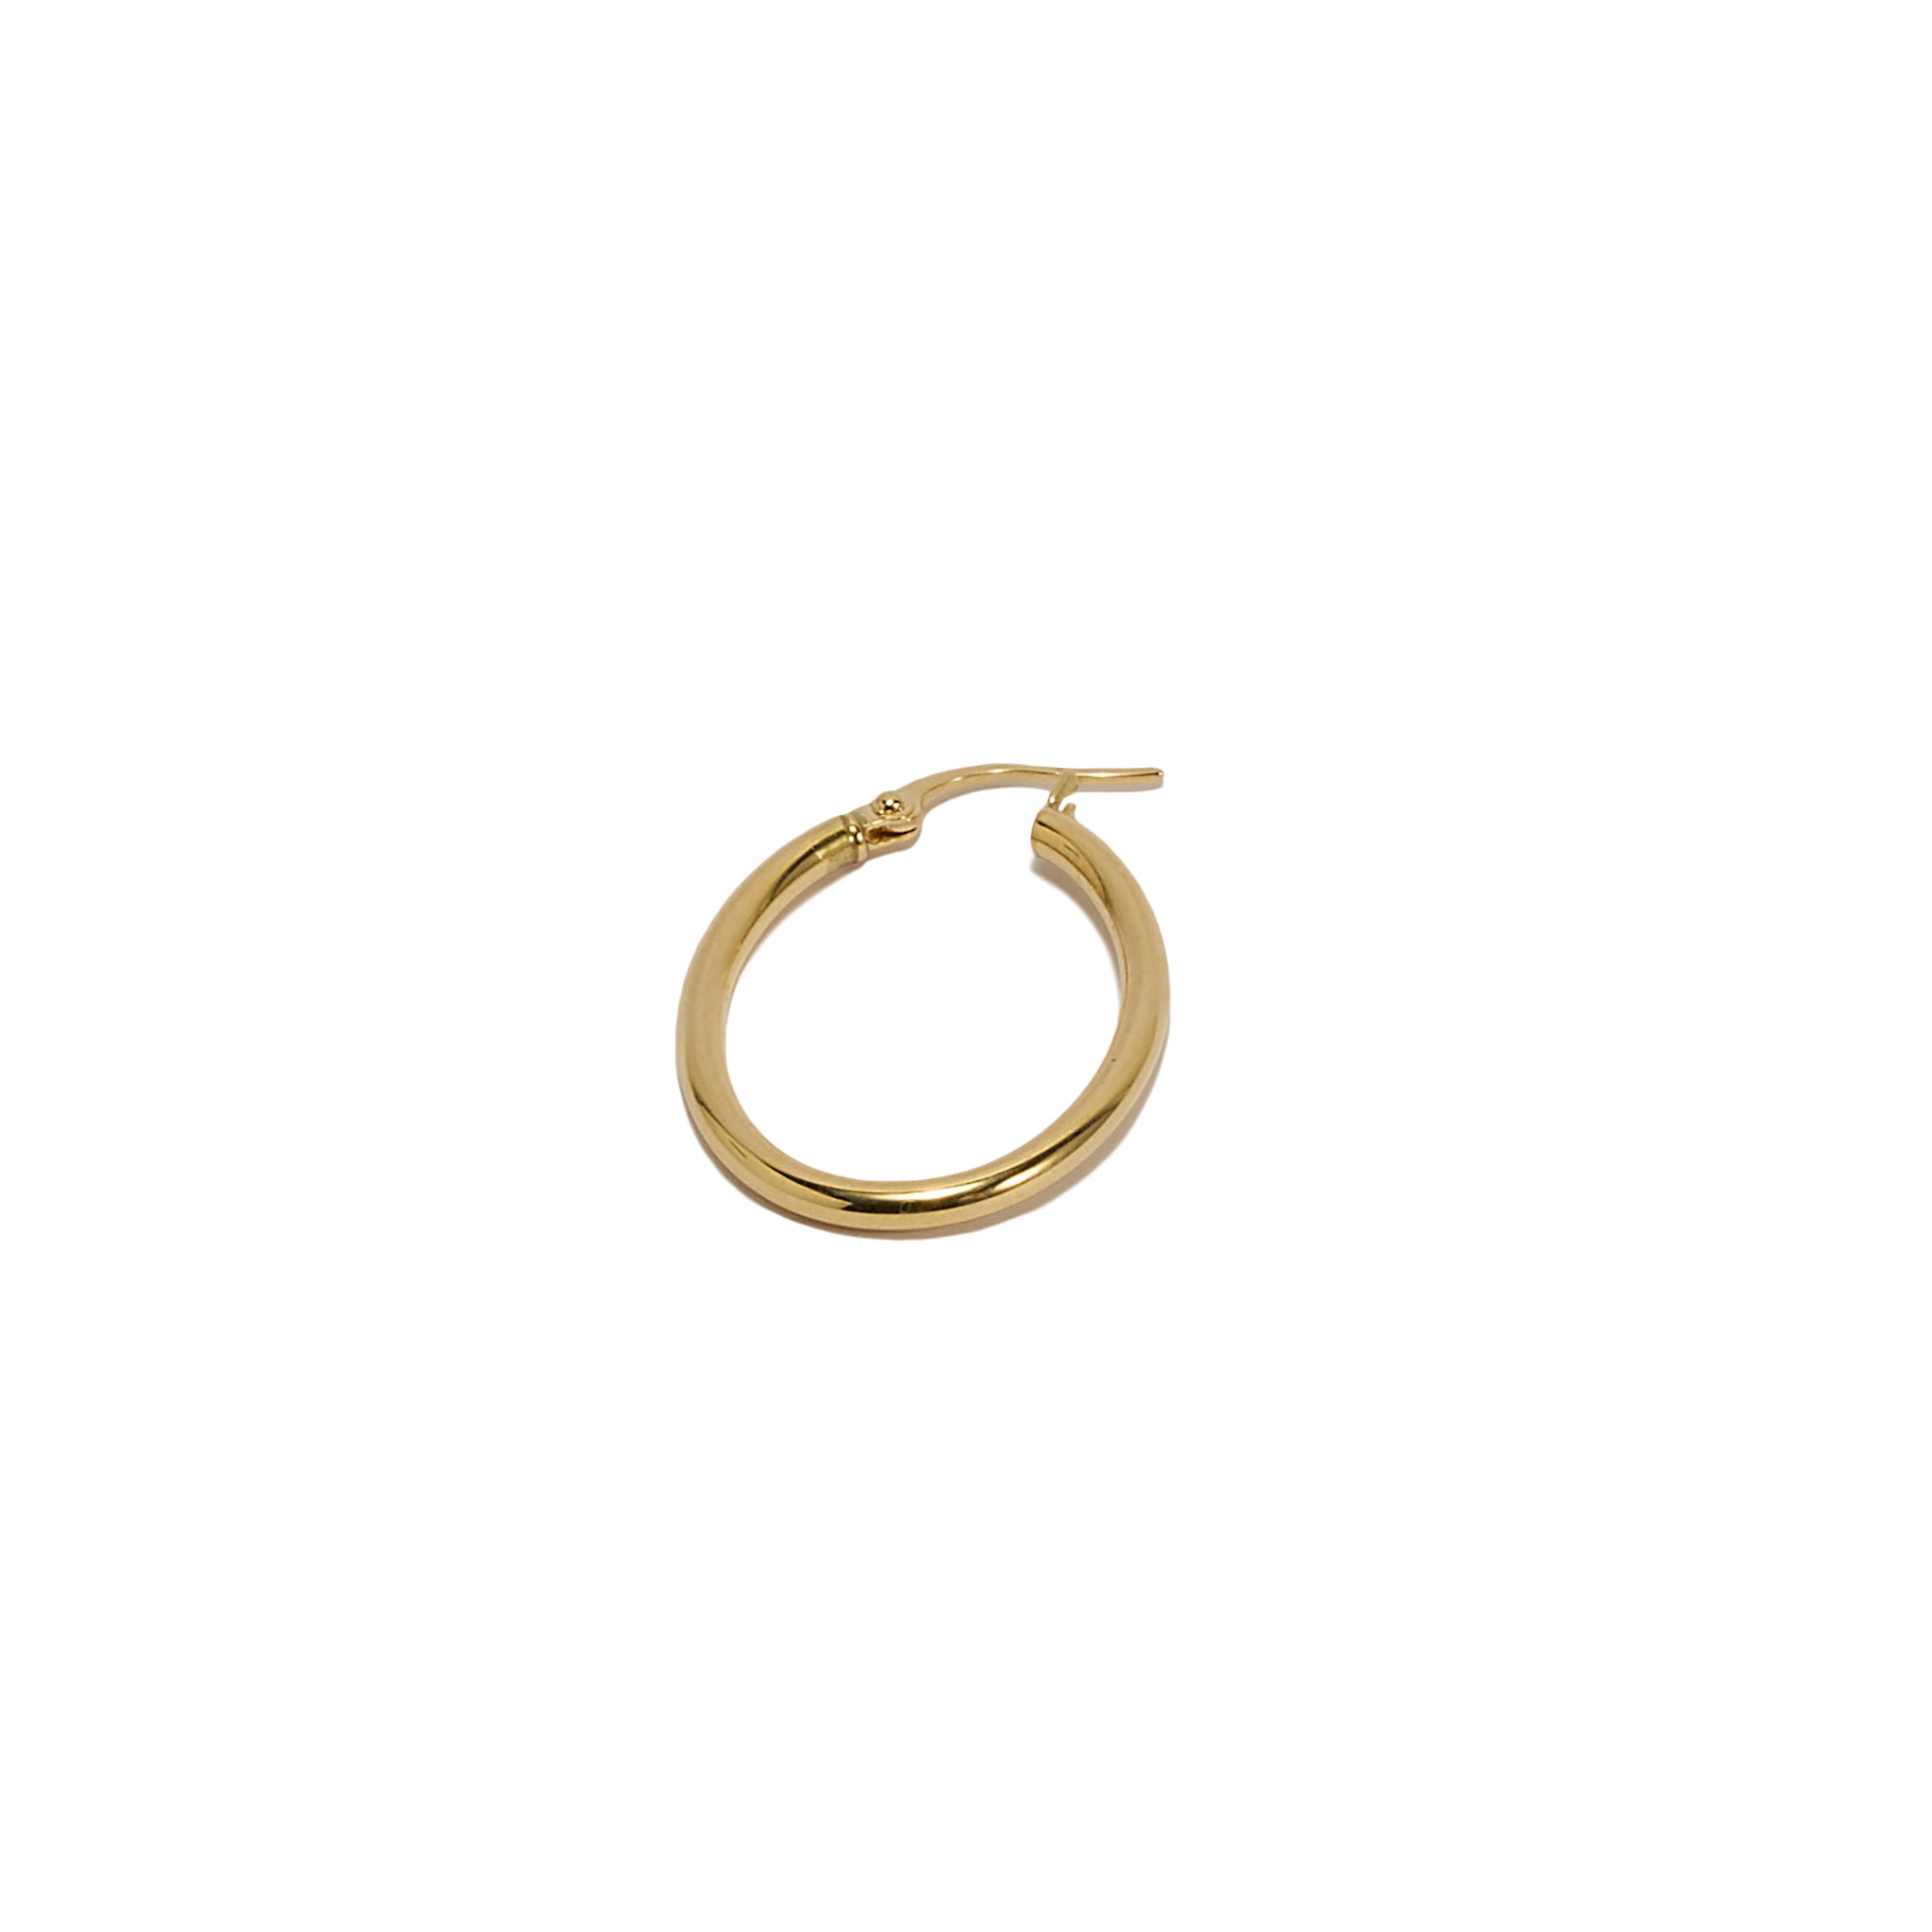 Oval Hoop Earrings - Abra Jewellery -